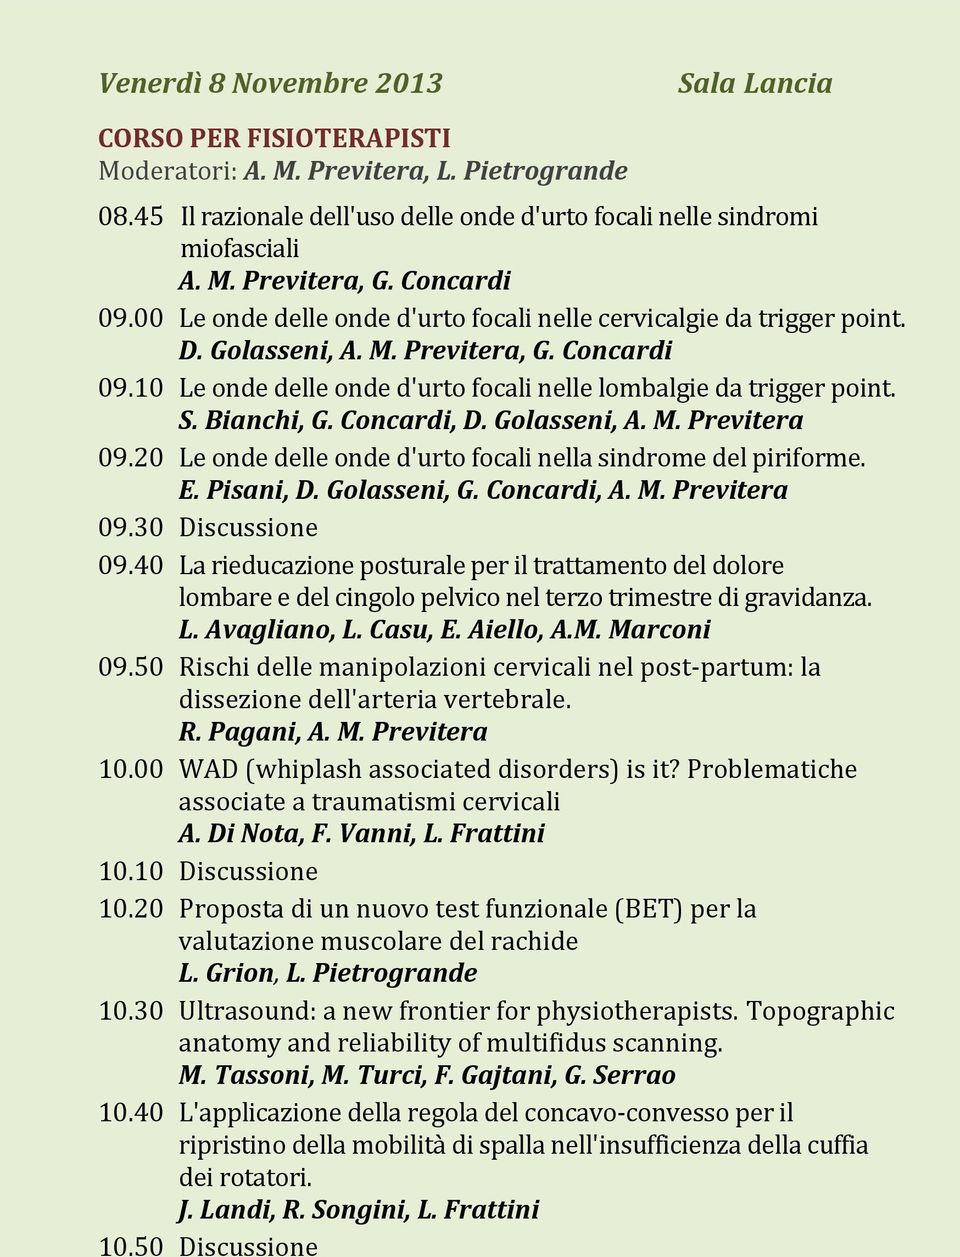 S. Bianchi, G. Concardi, D. Golasseni, A. M. Previtera 09.20 Le onde delle onde d'urto focali nella sindrome del piriforme. E. Pisani, D. Golasseni, G. Concardi, A. M. Previtera 09.30 Discussione 09.